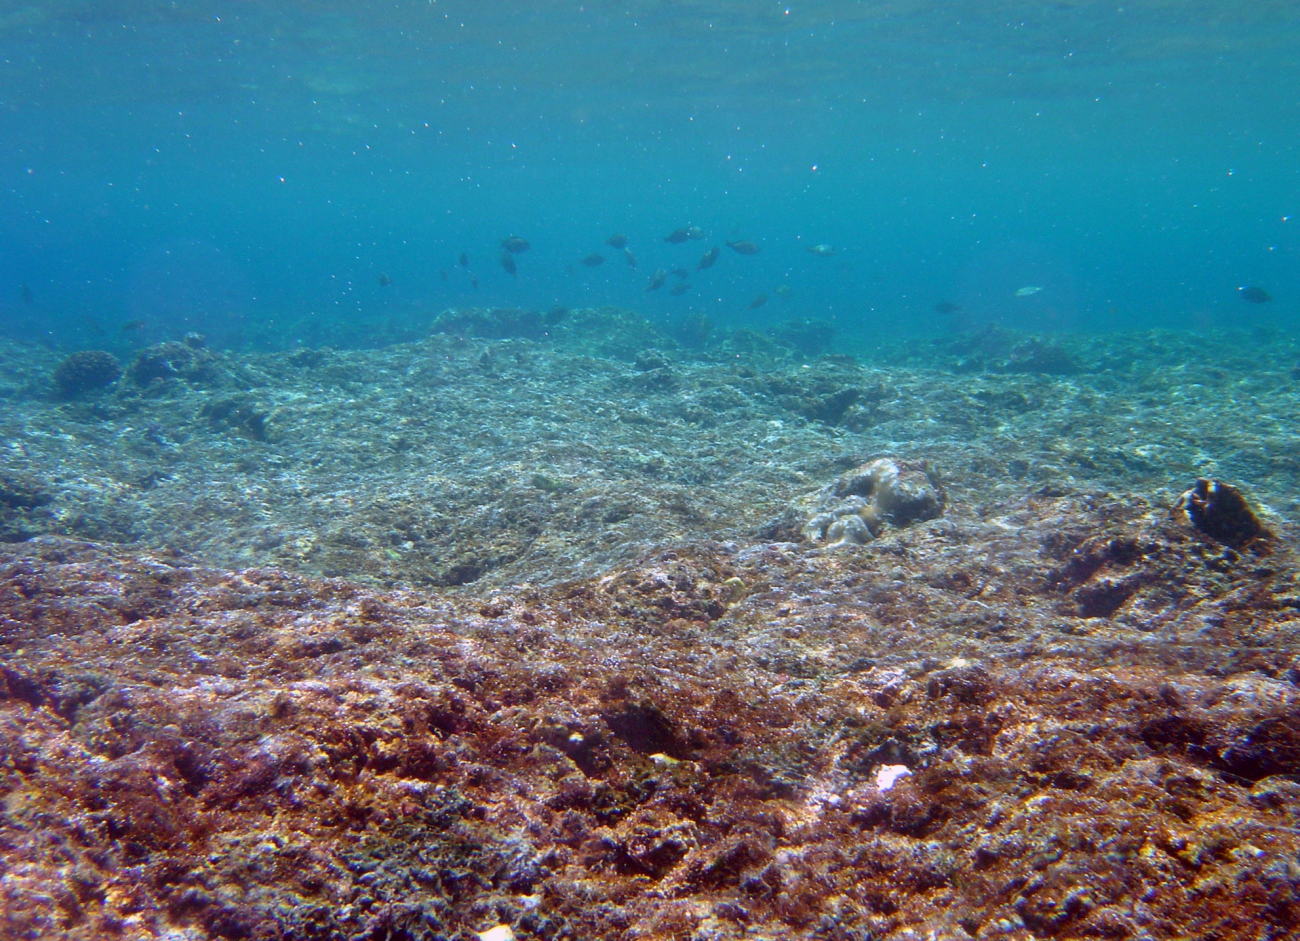 A dead reef